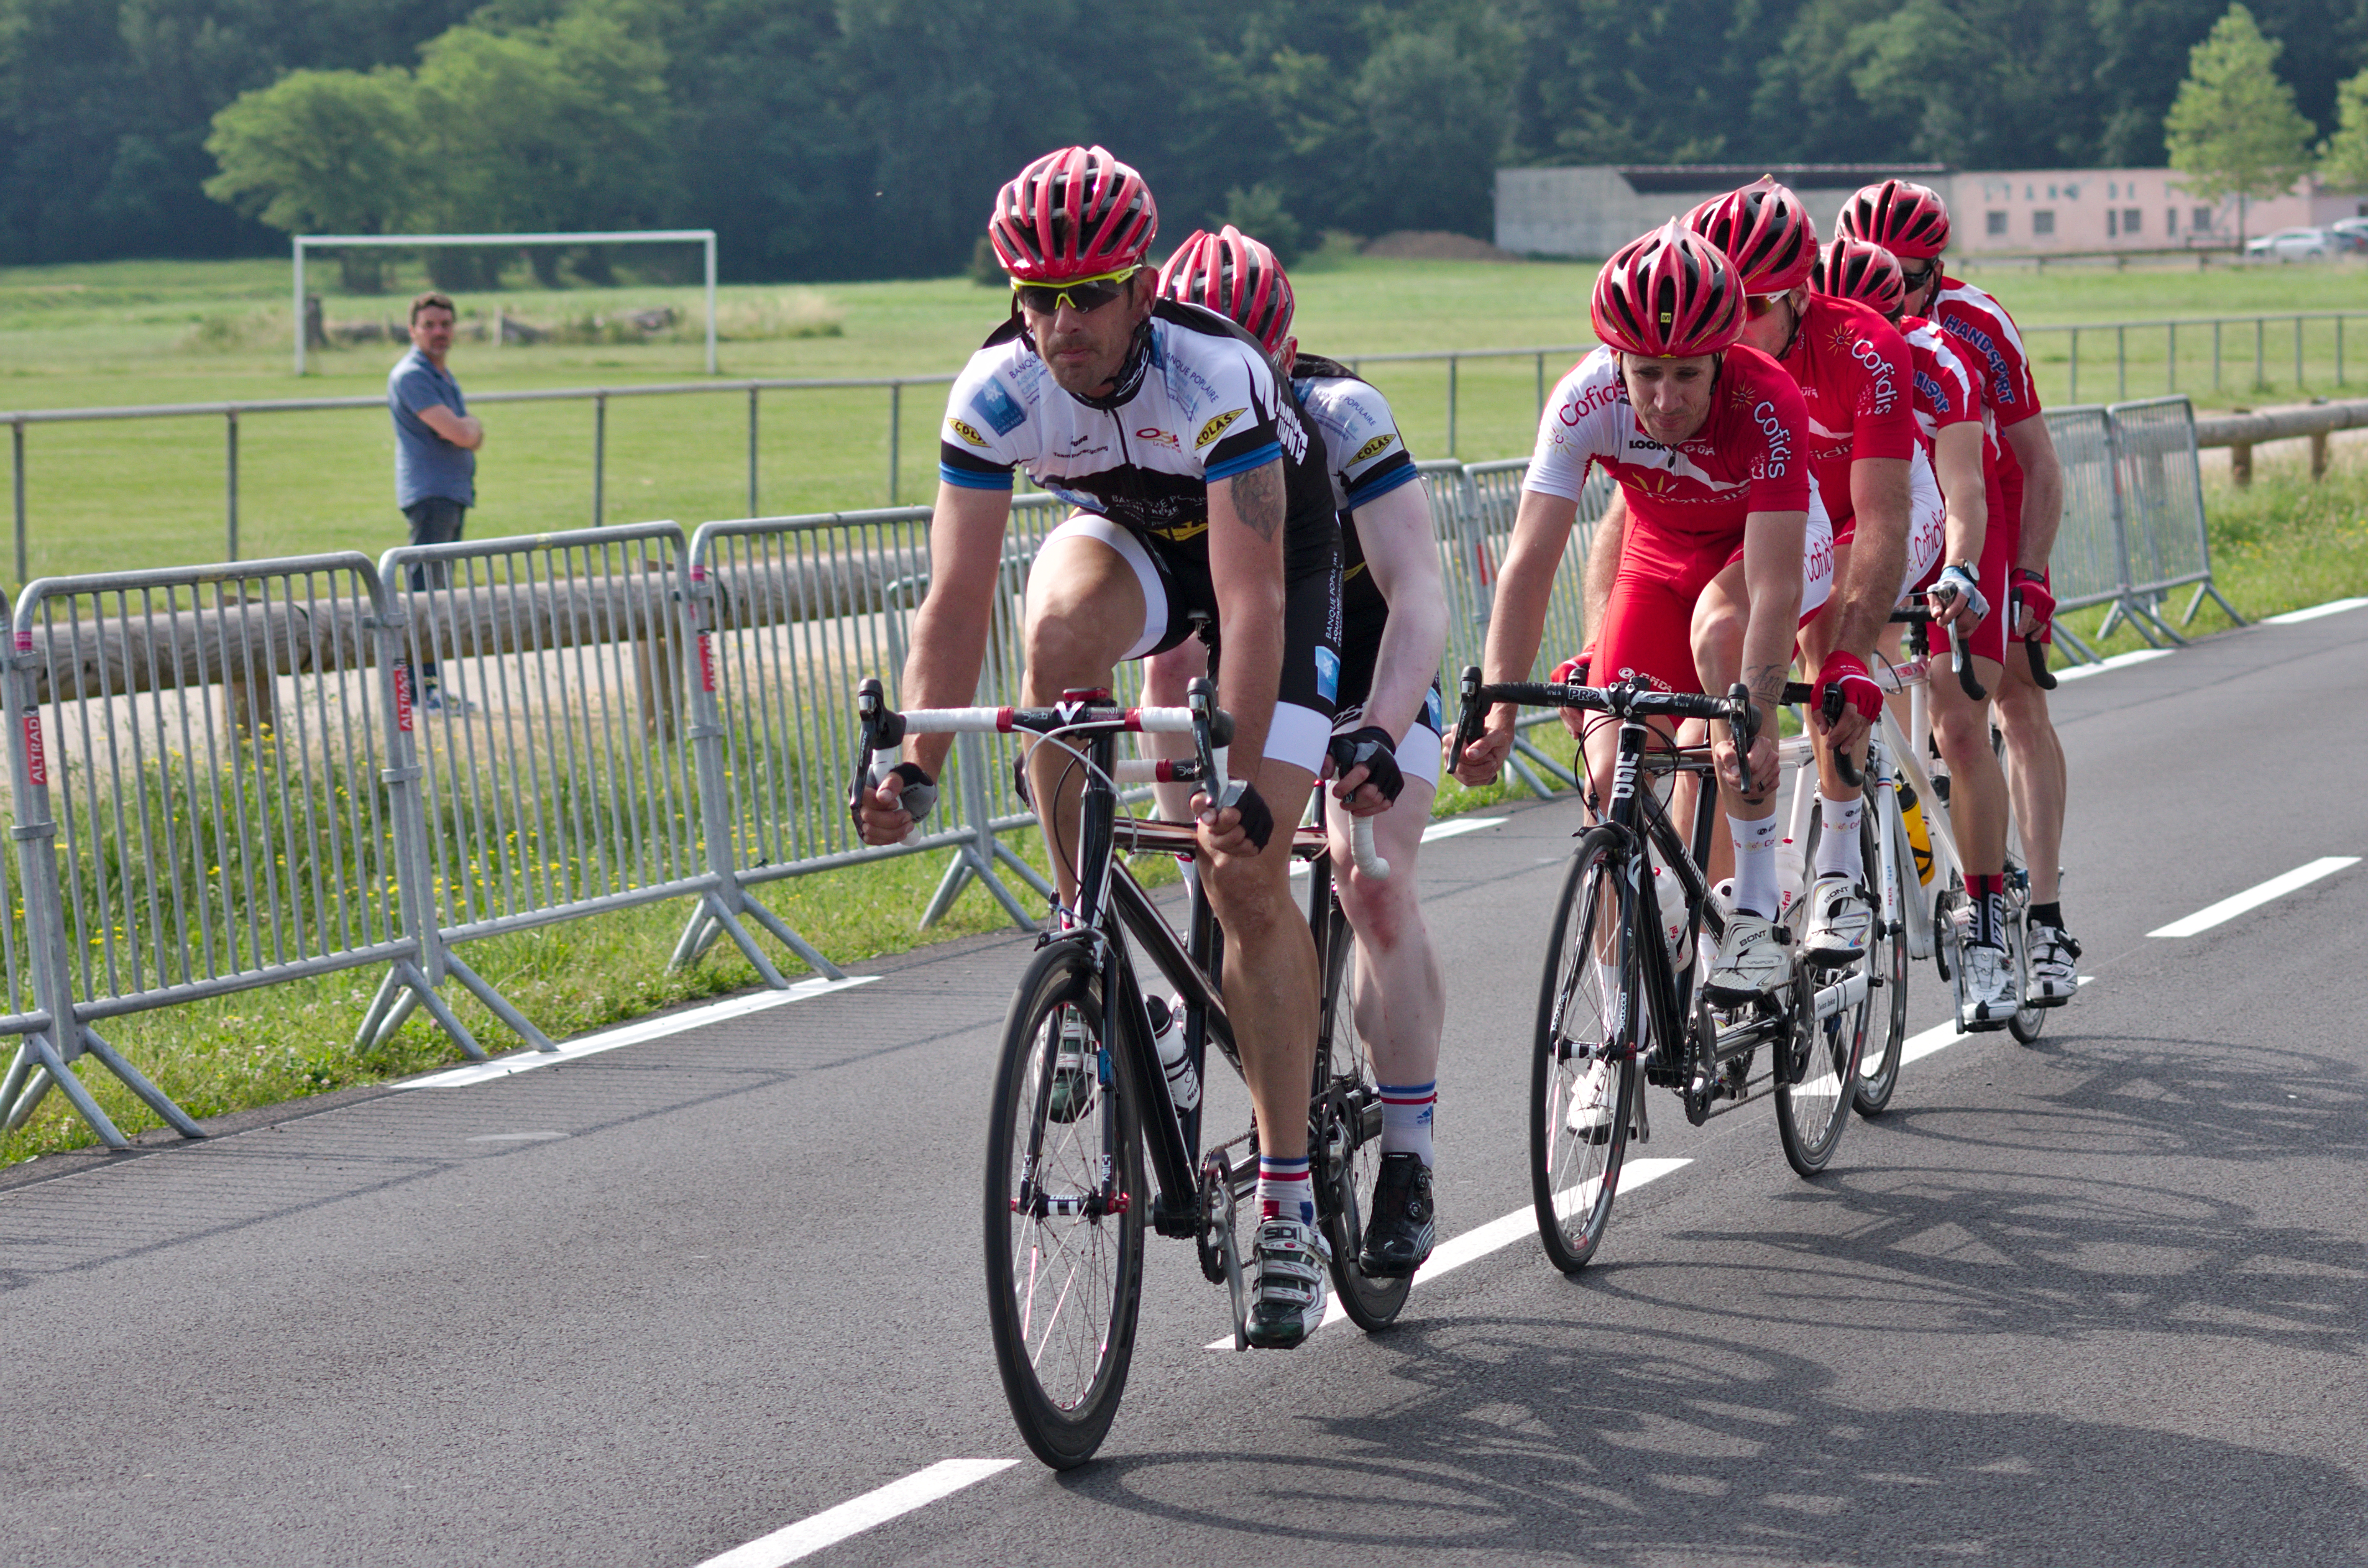 Championnat de France de cyclisme handisport - 20140614 - Course en ligne catégorie B 4